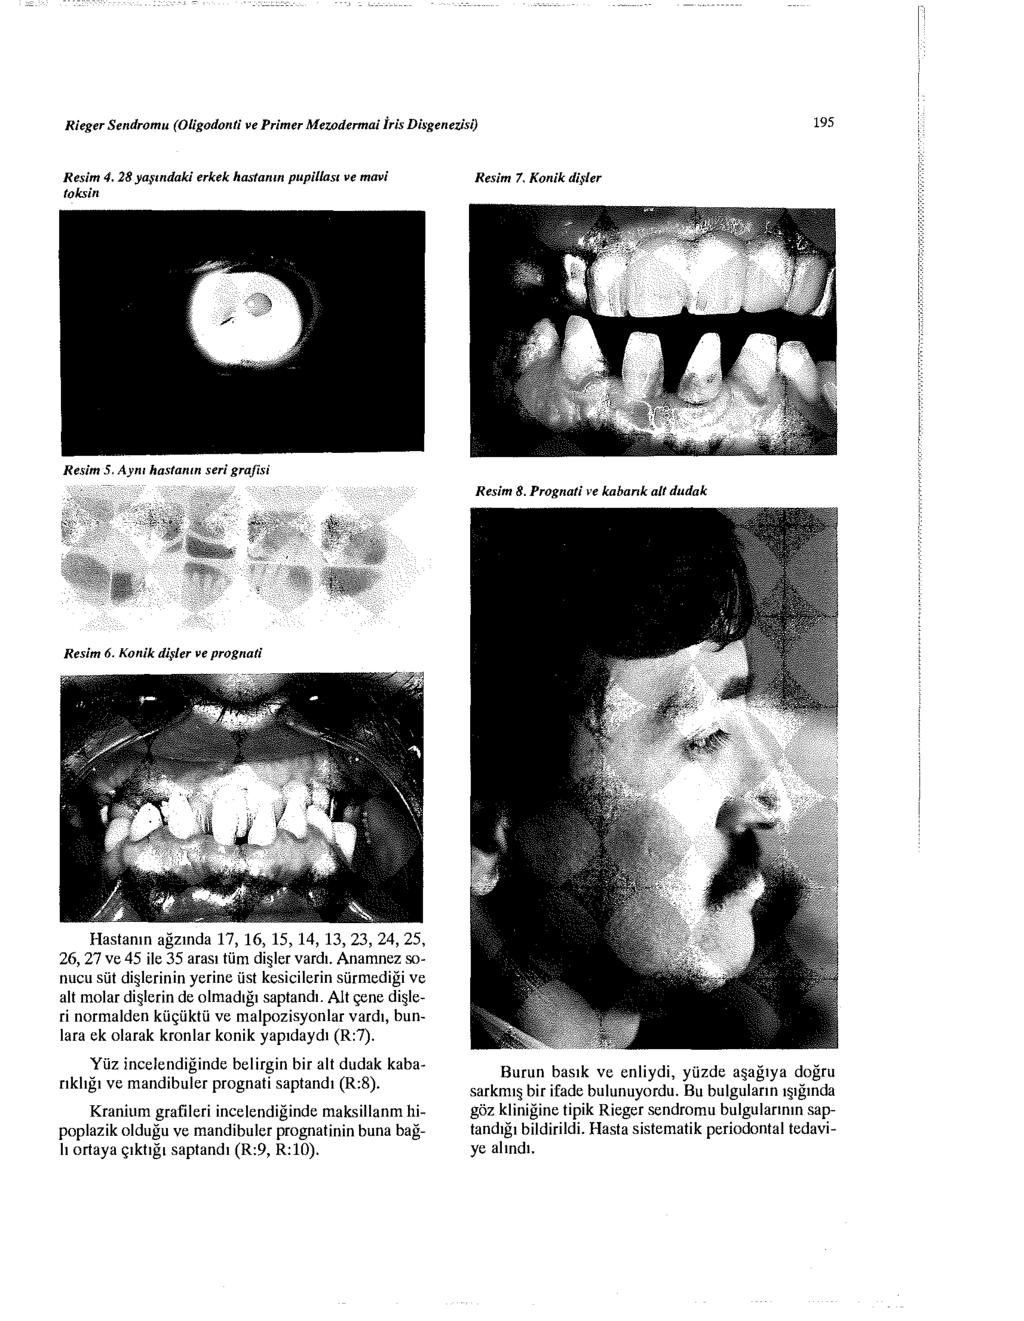 Rieger Sendromu (Oligodonti ve Primer Mezodermdi İris Diagenezisi) 195 Resim 4. 28 yaşındaki erkek hastanın pupillası ve mavi toksin Resim 7. Konik dişler Resim 5. Aynı hastanın seri grafısı Resim 8.